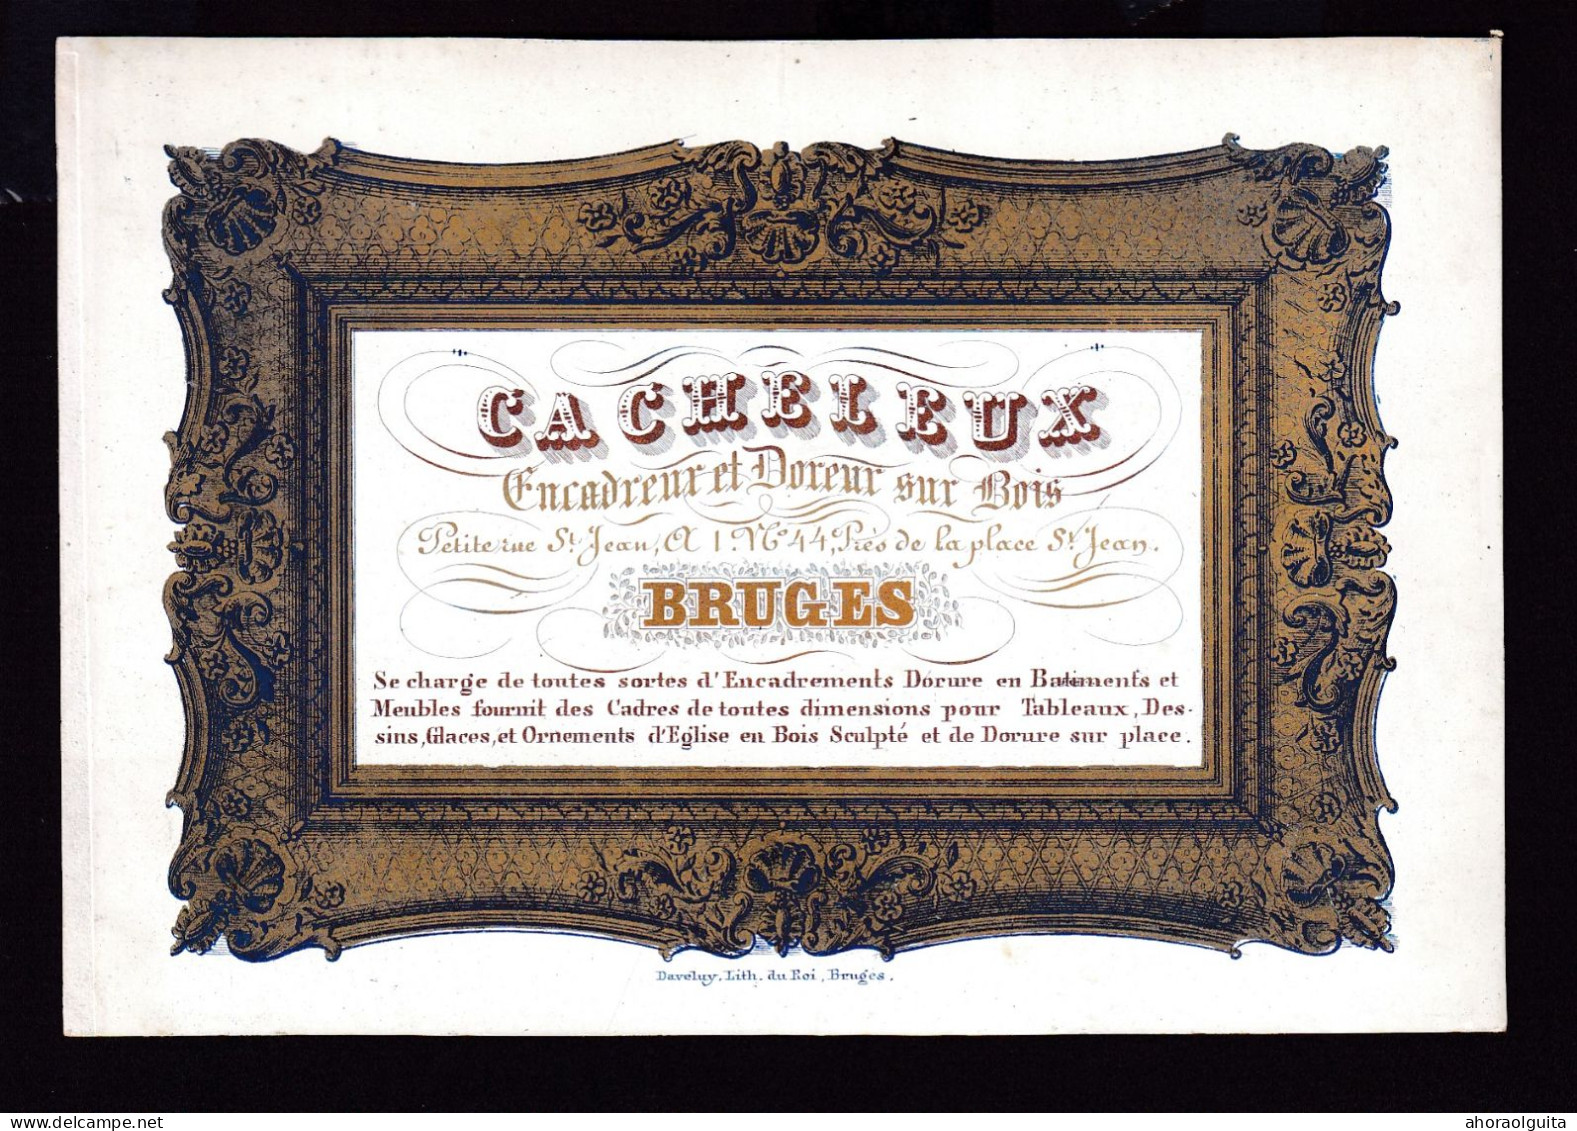 592/29 -- BRUGES CARTE PORCELAINE - Carte Illustrée Cheleux, Encadreur Et Doreur Sur Bois - Litho Années1840/50 - Cartes De Visite